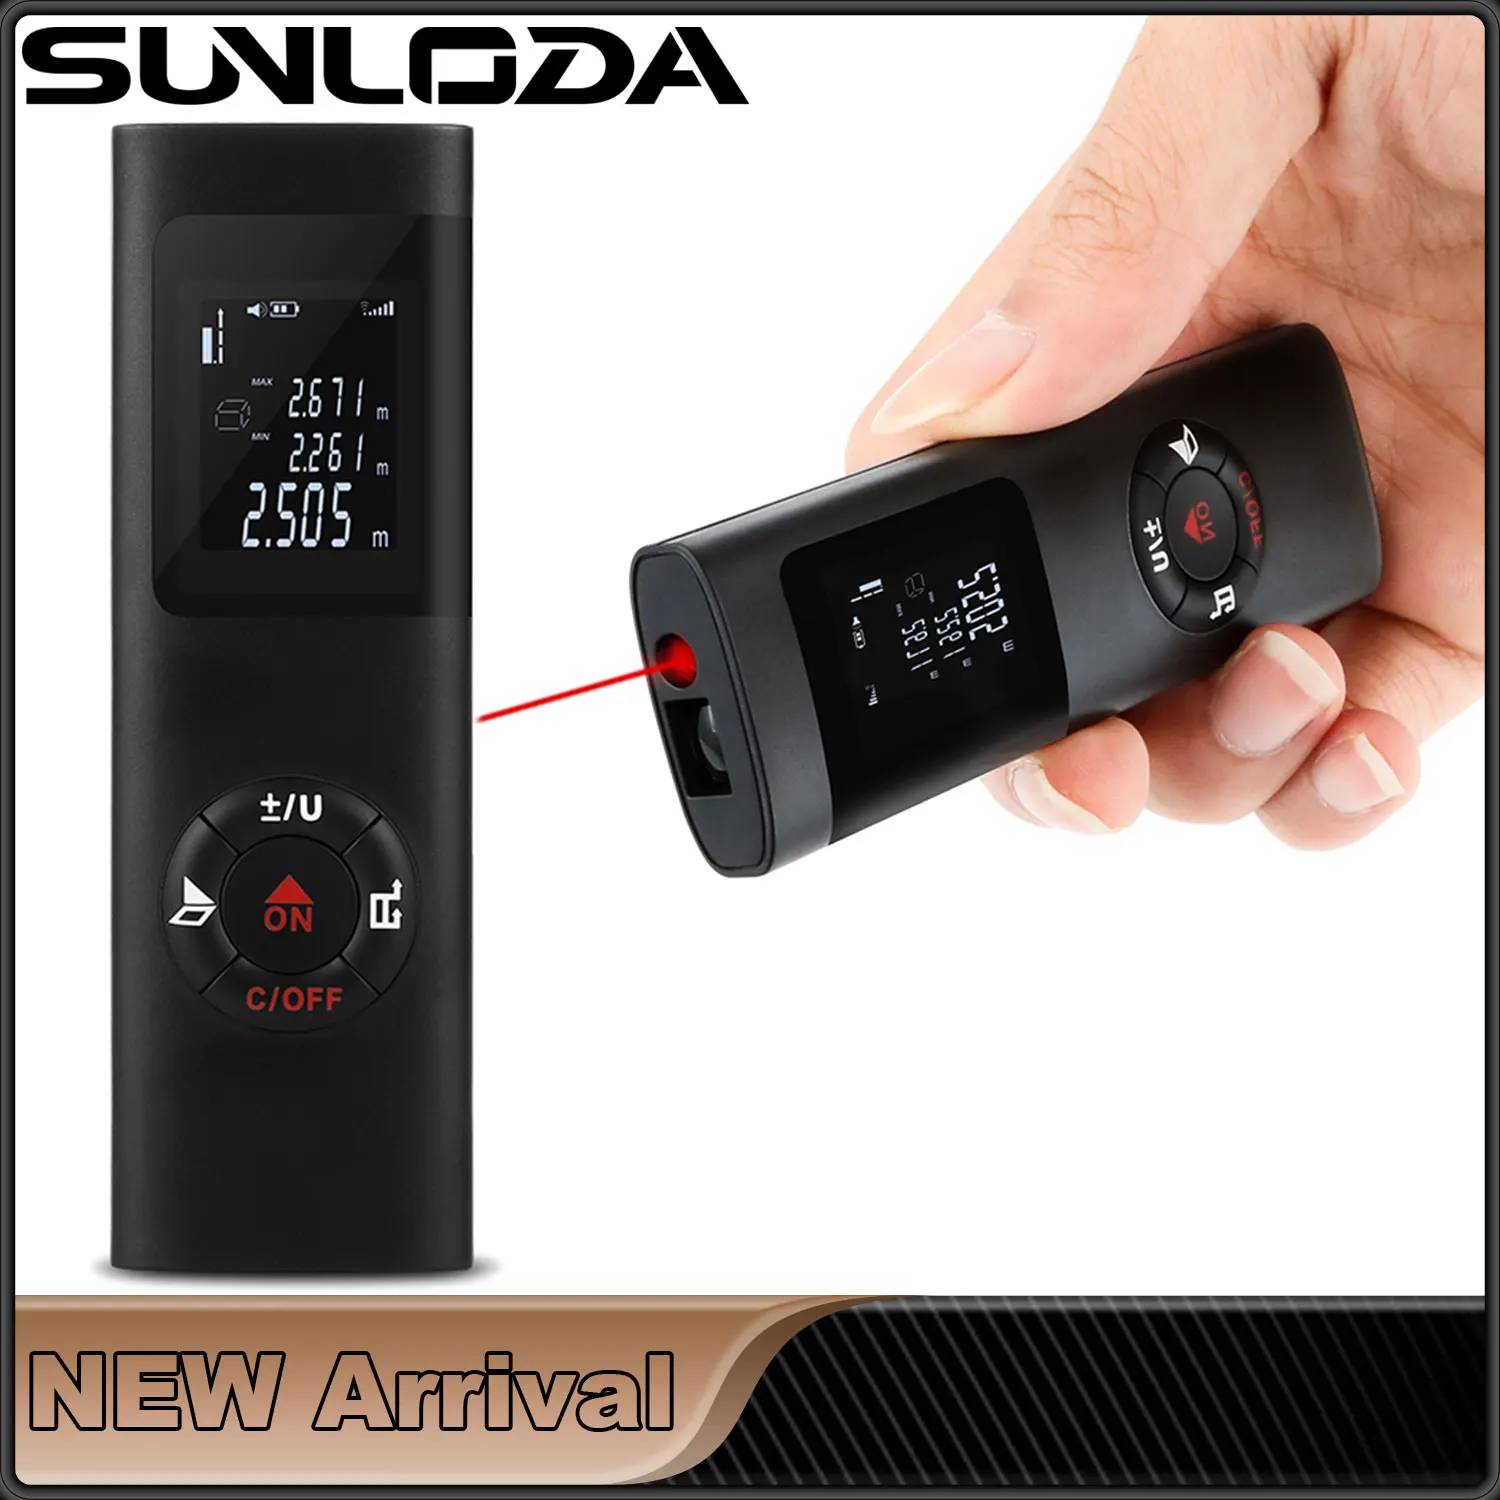 

40M Mini Smart Laser Distance Meter Measure Infrared Rangefinder USB Rechargeable Portable Handheld Laser Range Finder Tools